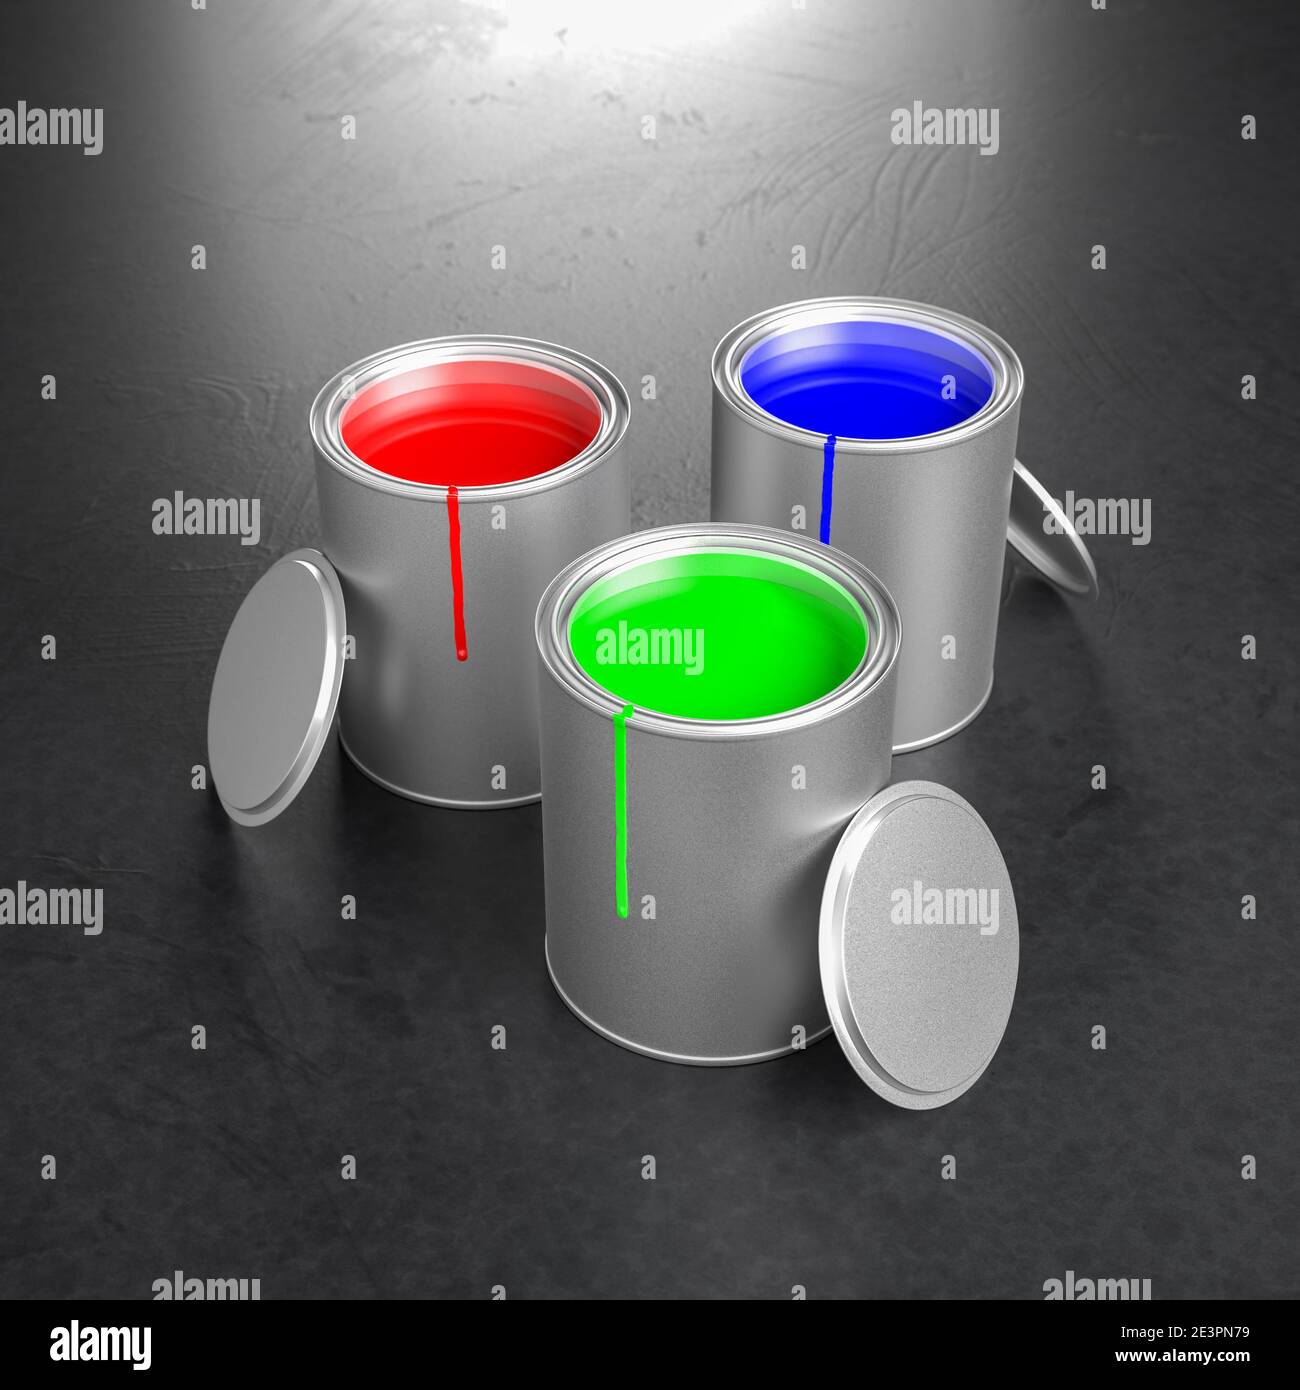 Pots de peinture avec les couleurs primaires RVB du modèle de couleur additive : rouge, vert, bleu. Taches de couleur sur les pots, couvercles inclinés vers les pots. Banque D'Images